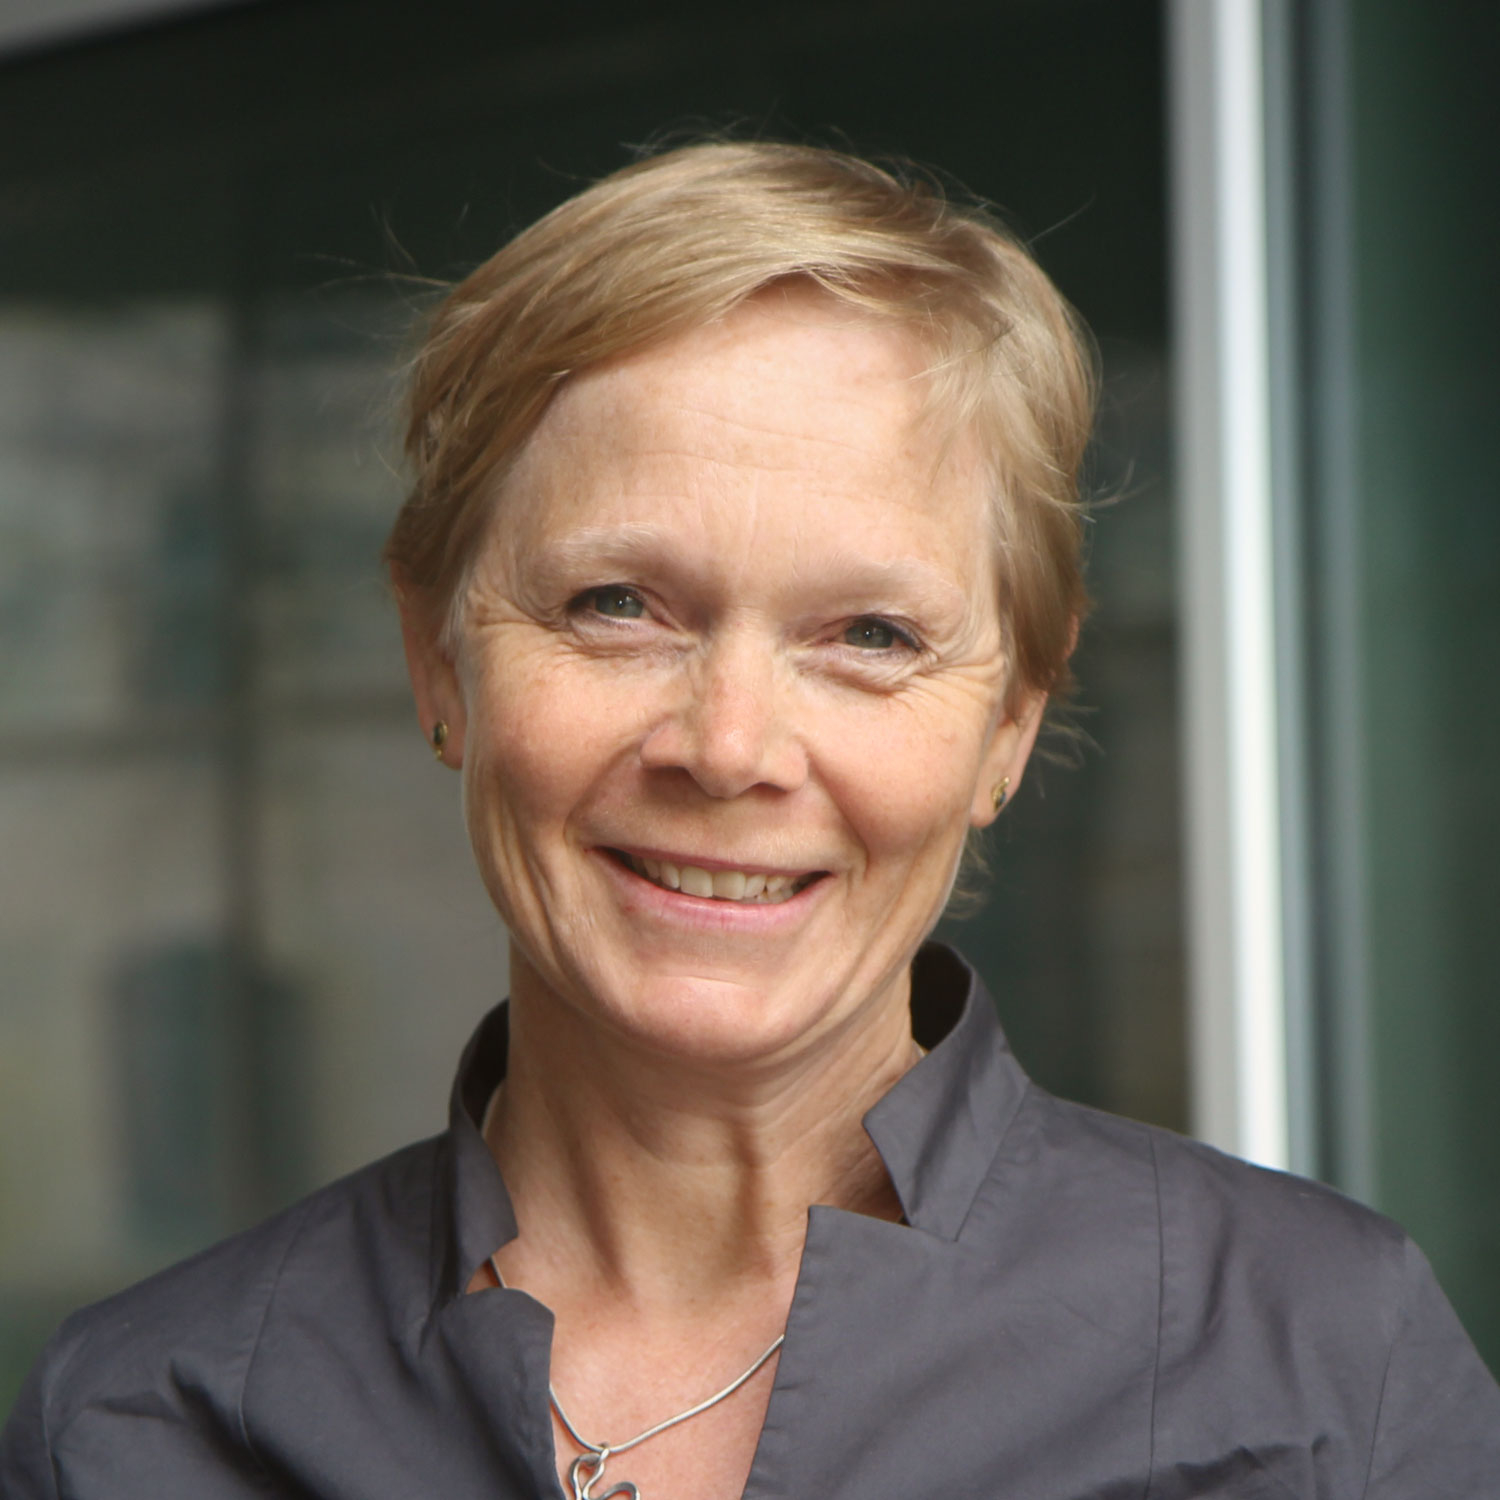 Dr. Petra Holtrup Mostert